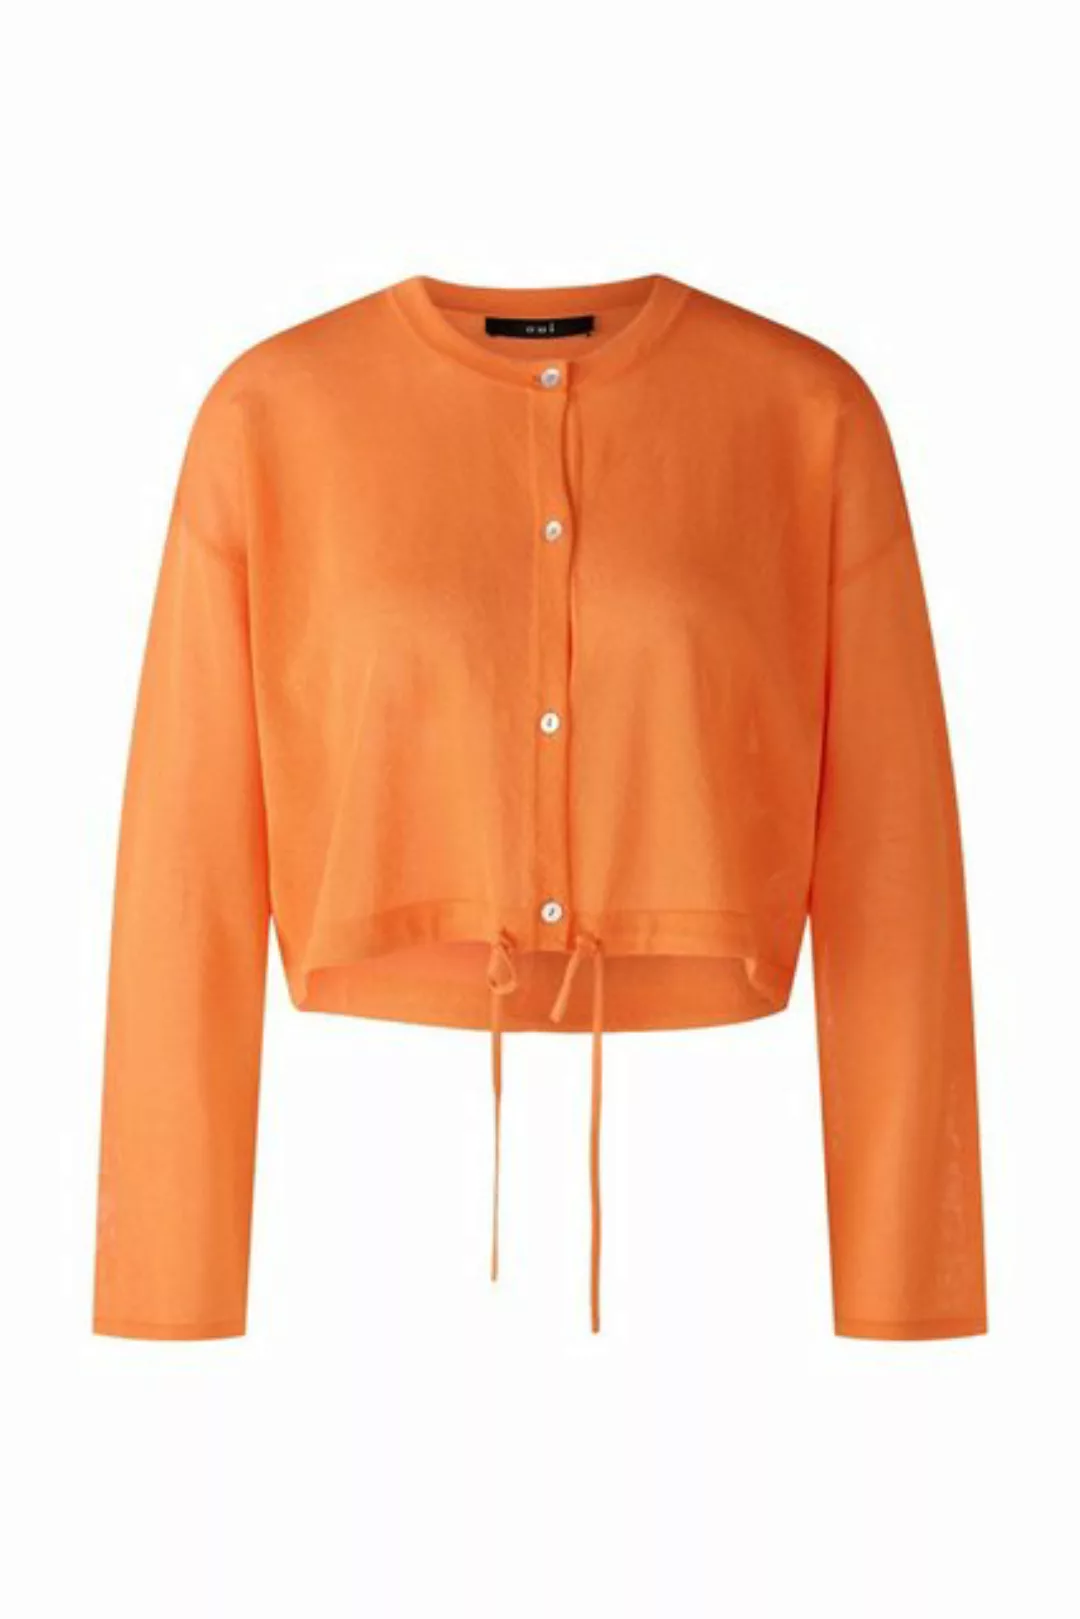 Oui Blusenshirt 87302 vermillion orange günstig online kaufen